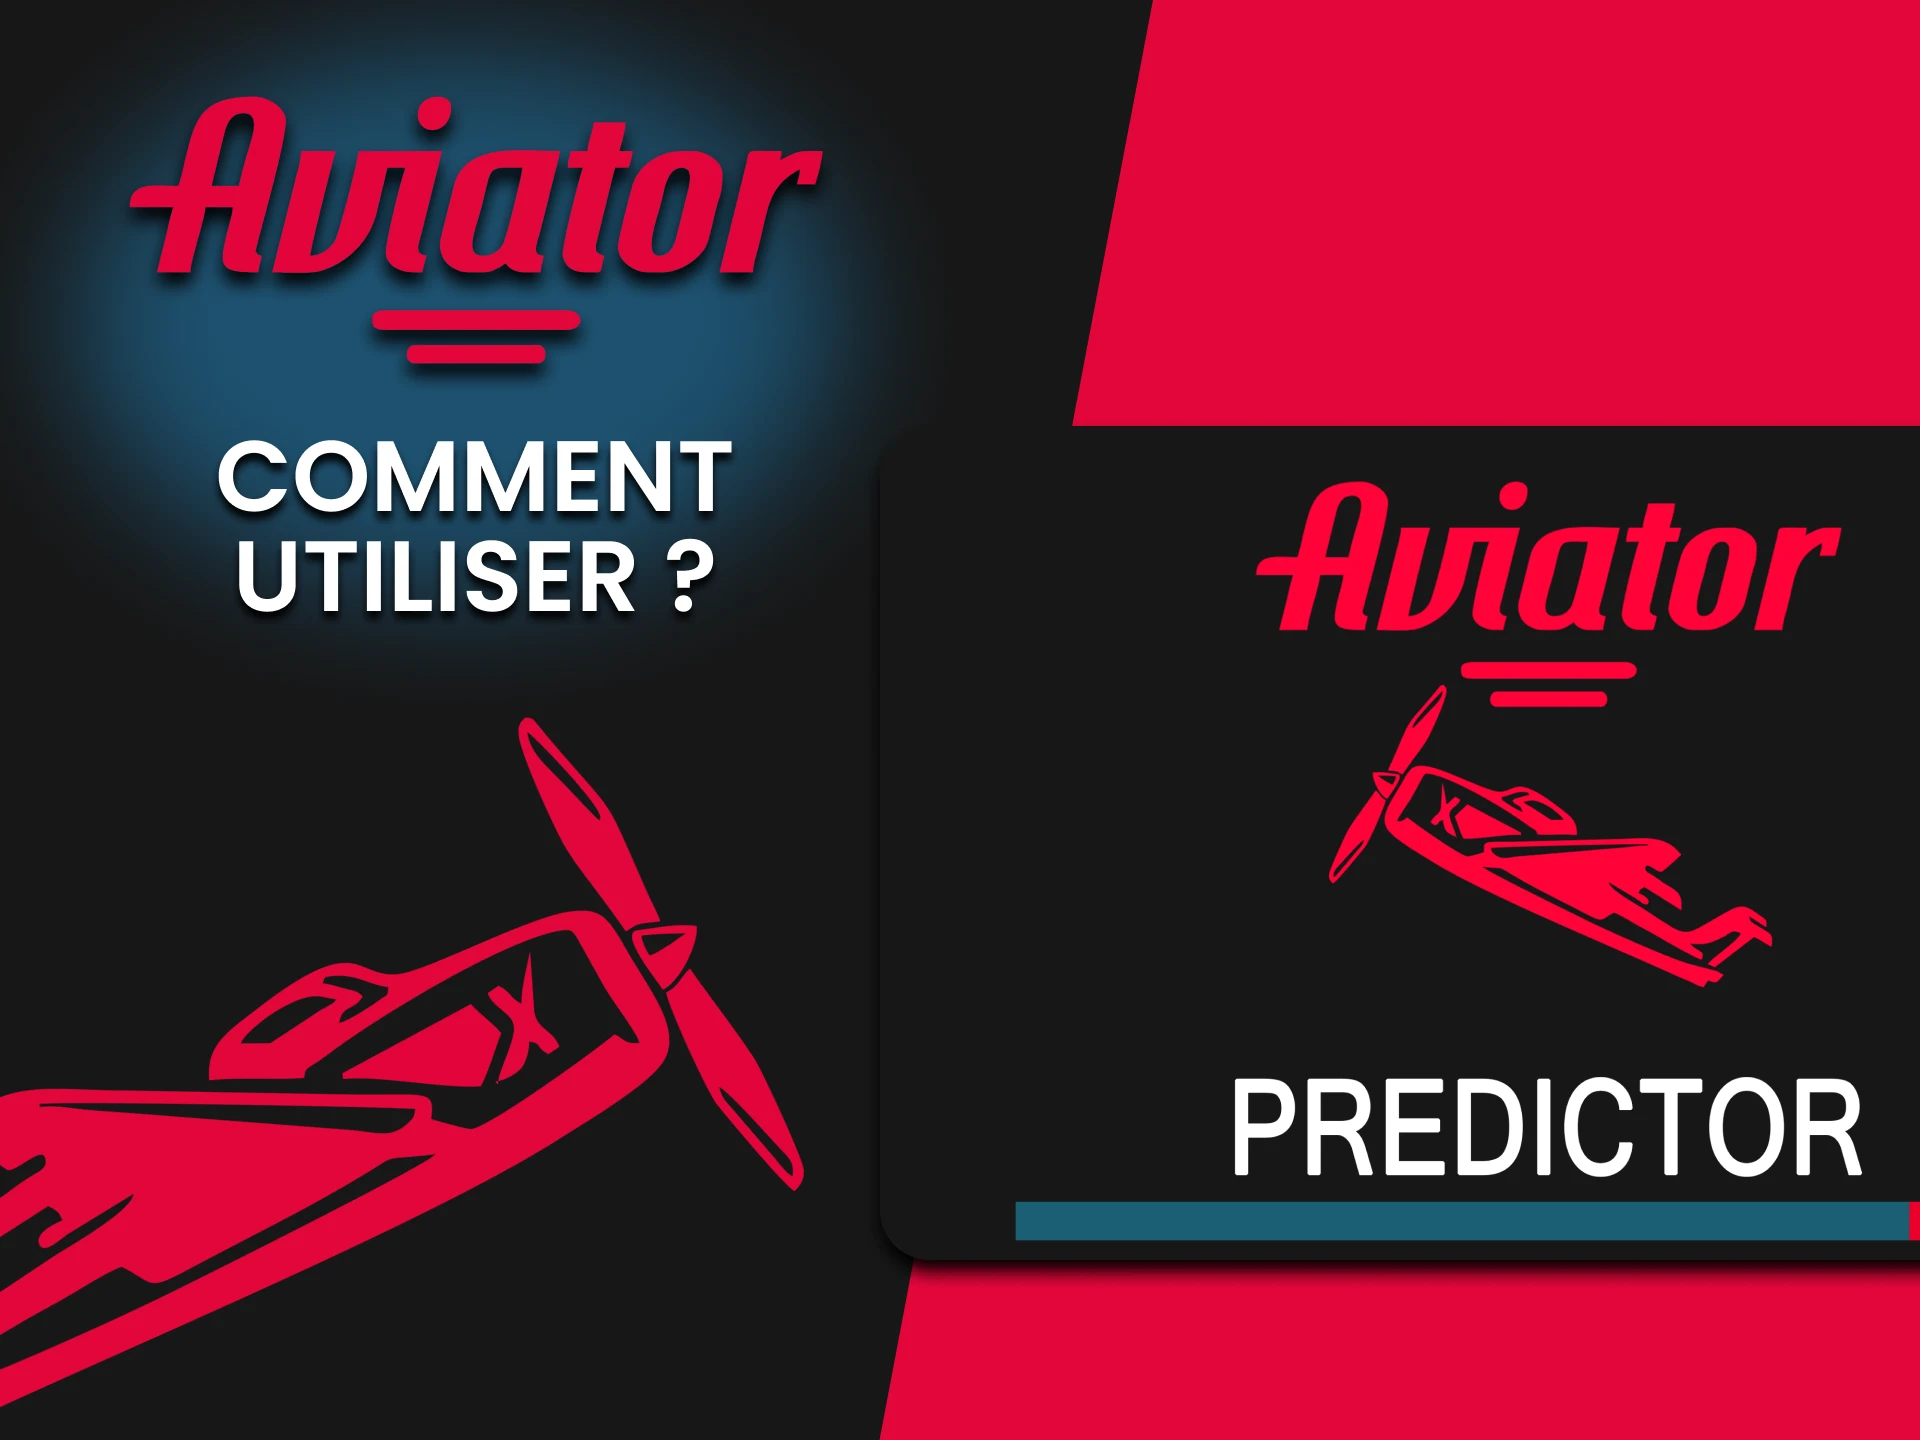 Nous vous expliquerons comment utiliser Predictor pour Aviator.